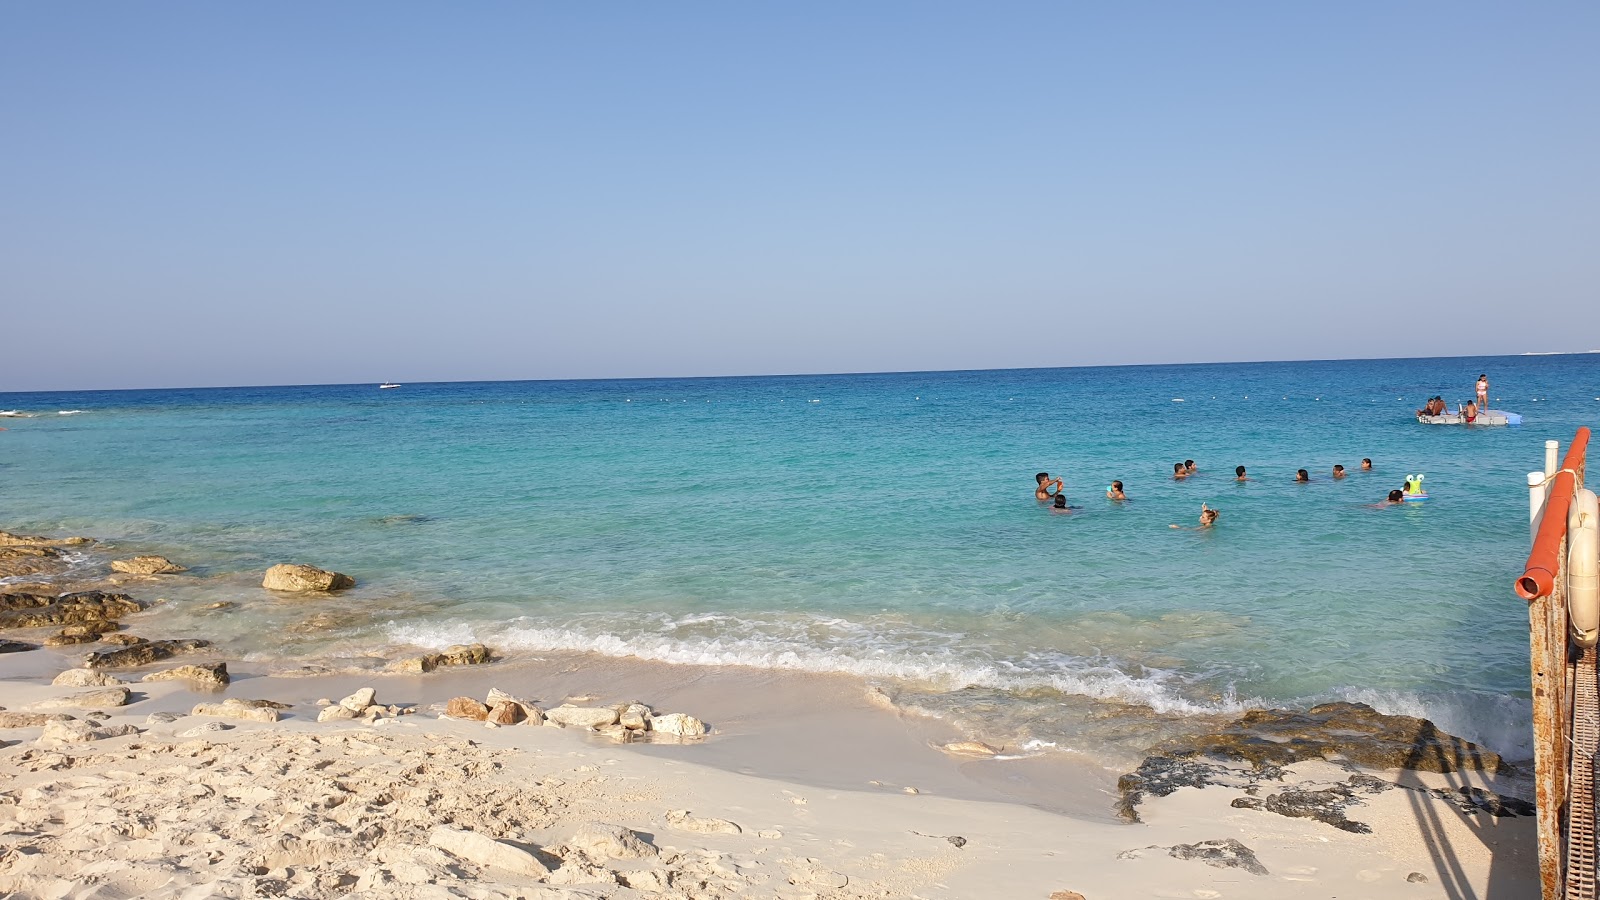 Zoya Ghazala Beach'in fotoğrafı geniş plaj ile birlikte